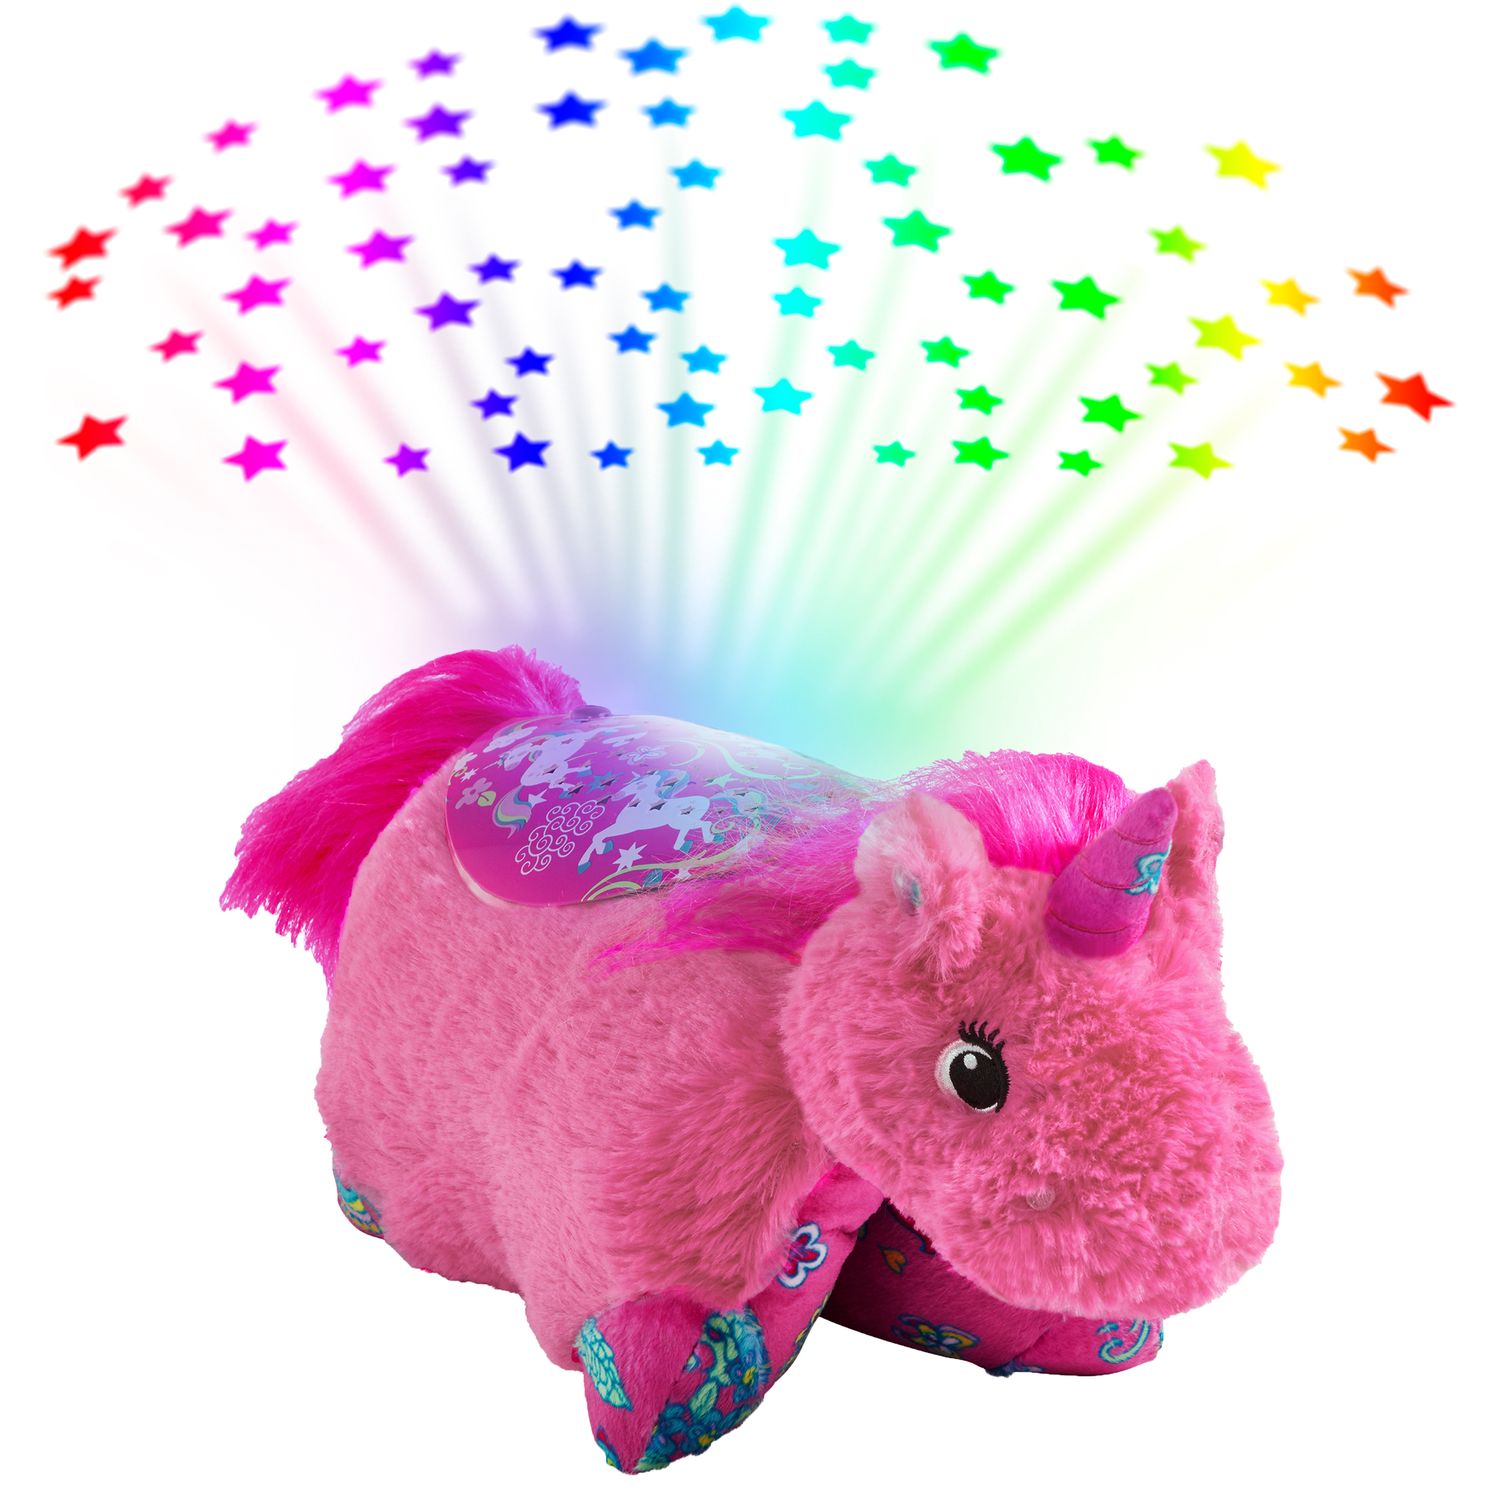 pink unicorn plush